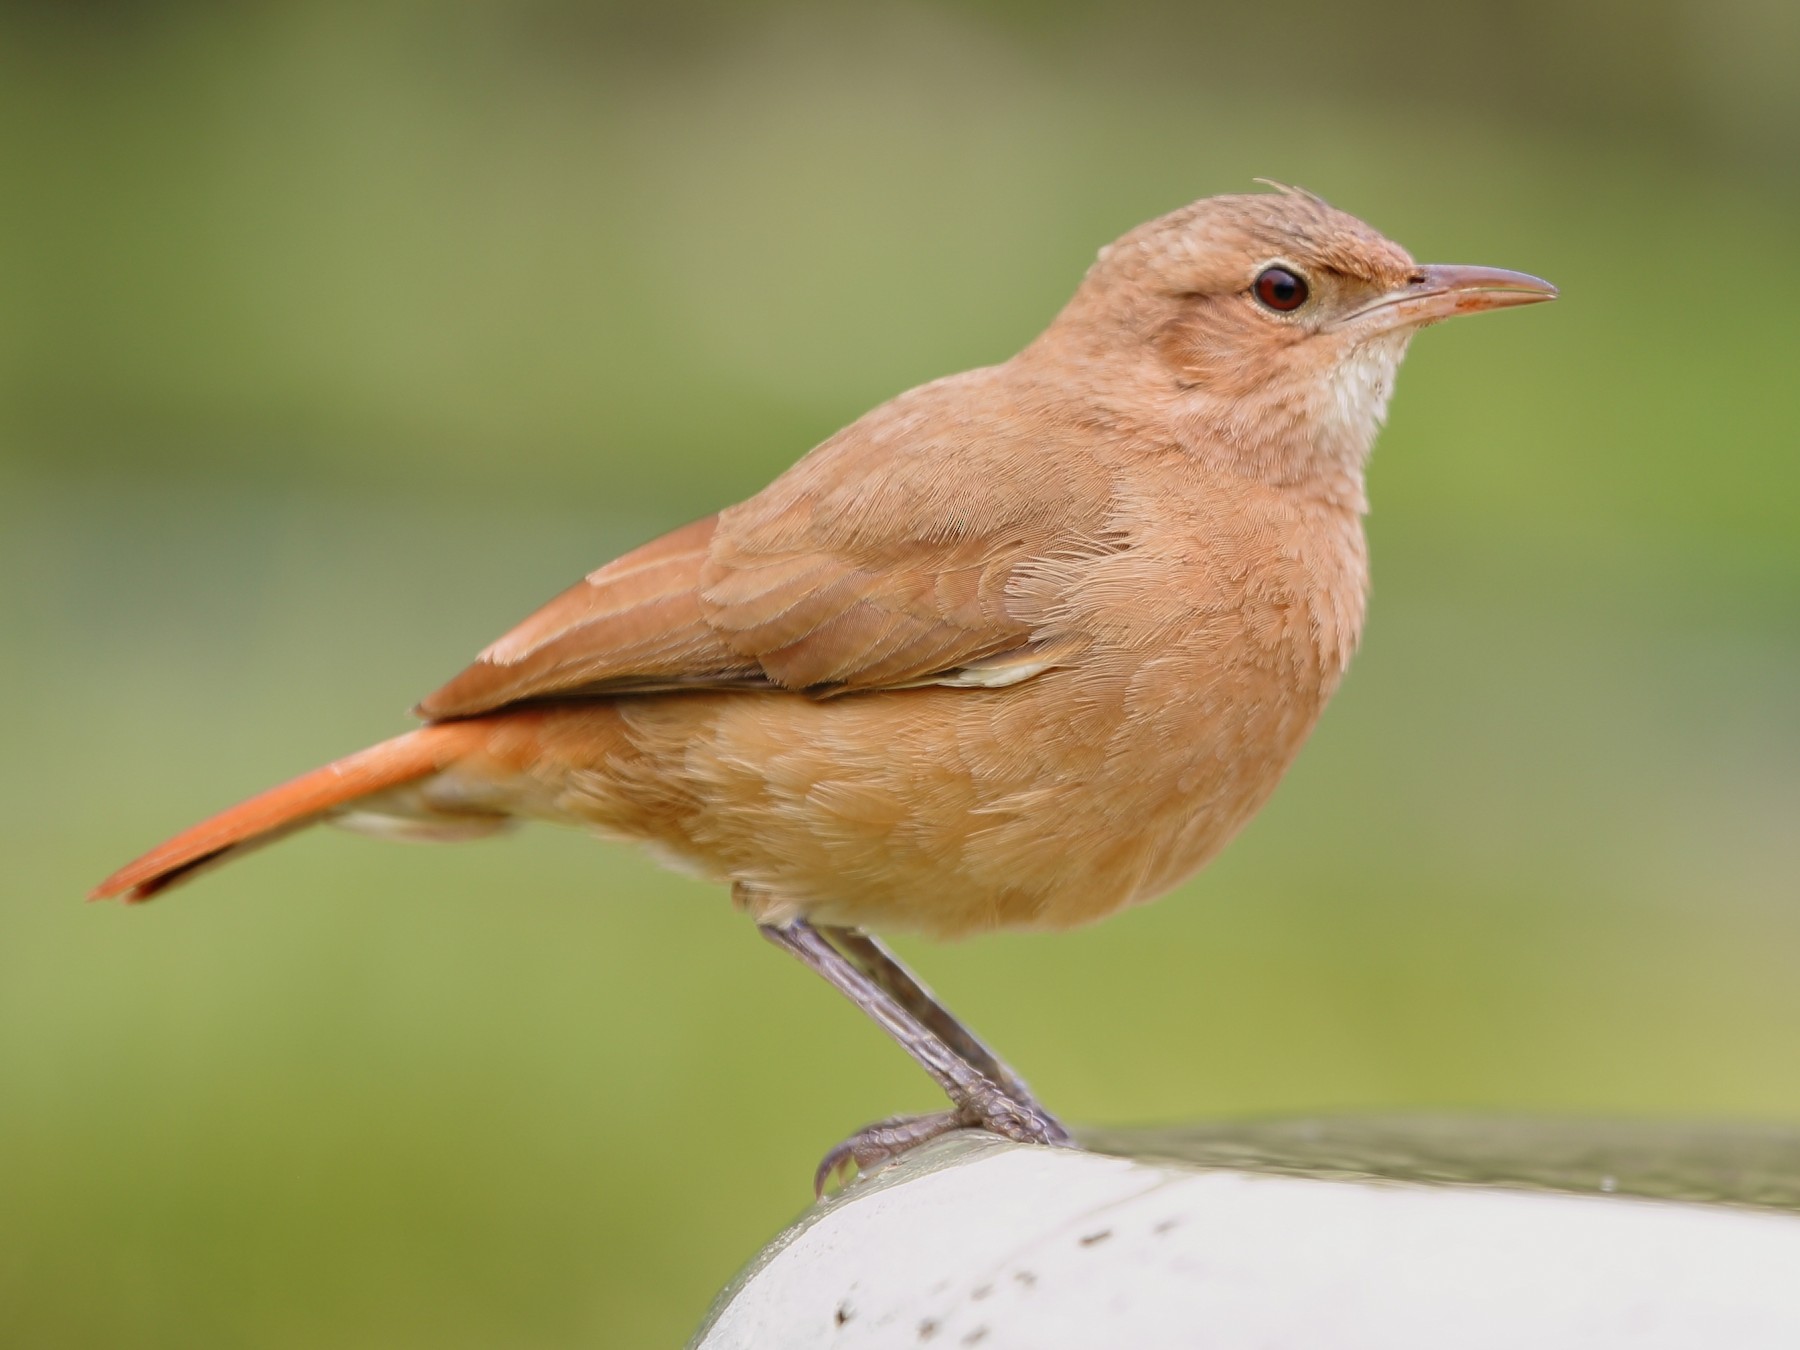 Aves Argentinas lanza una nueva aplicación para identificar las diferentes especies.